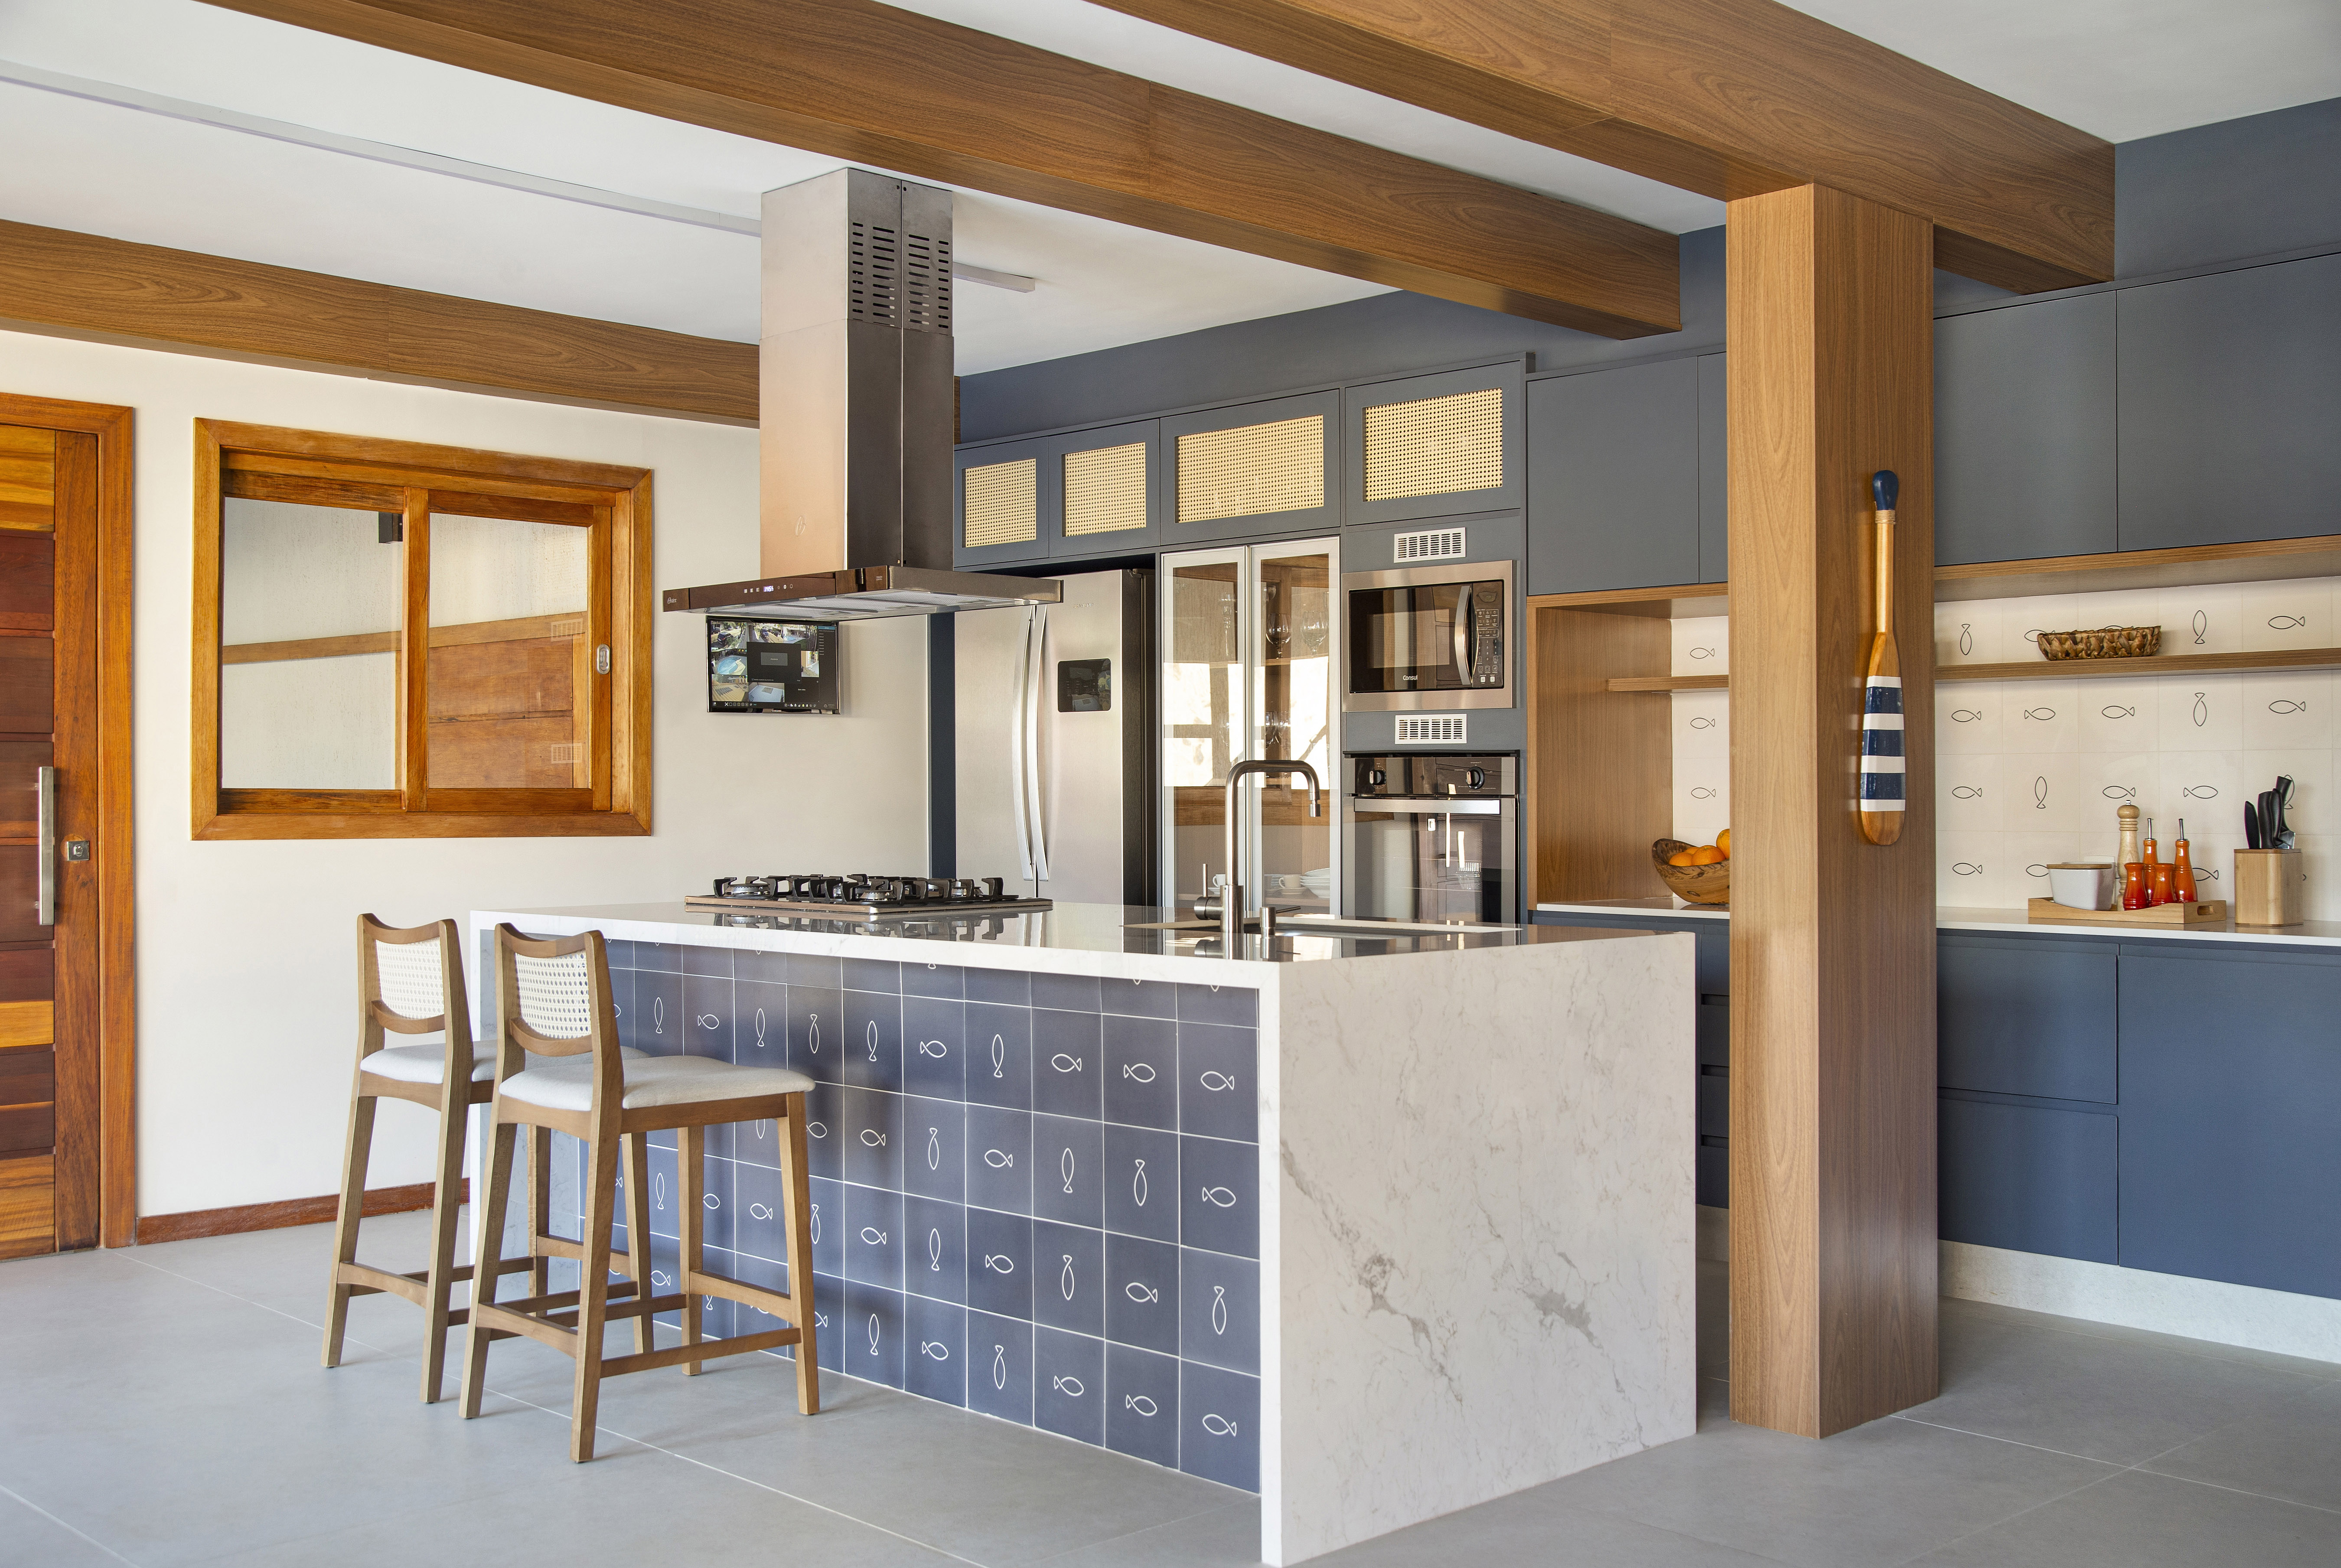 Ilha de cozinha revestida de azulejos com peixes é destaque nesta casa. Projeto de Travessa Arquitetura. Na foto, cozinha com marcenaria azul, ilha com azulejos e mármore.